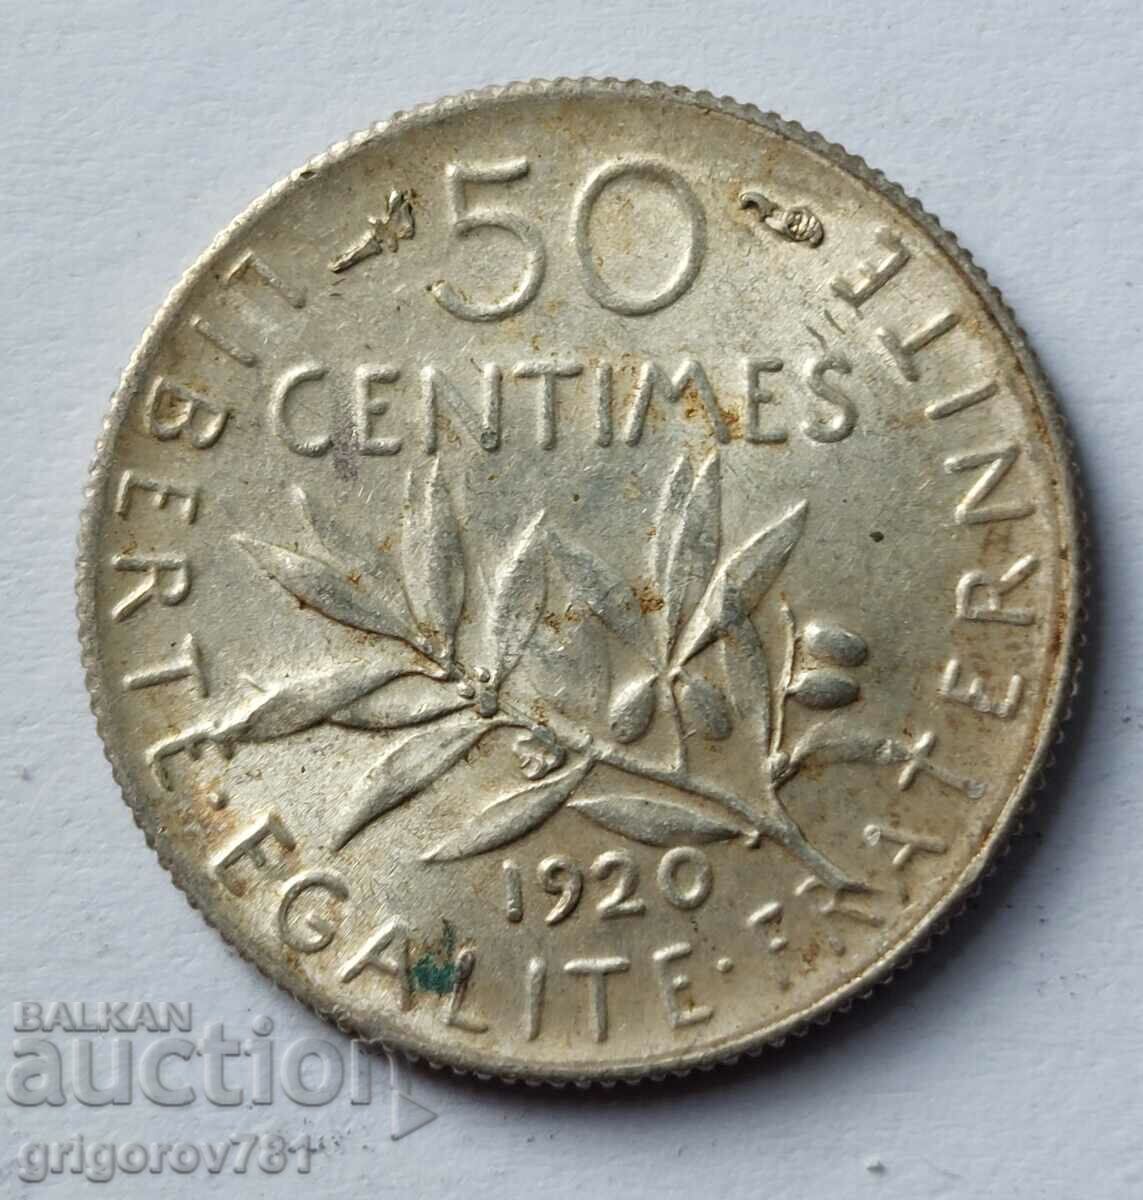 Ασημένιο 50 εκατοστά Γαλλία 1920 - ασημένιο νόμισμα №29